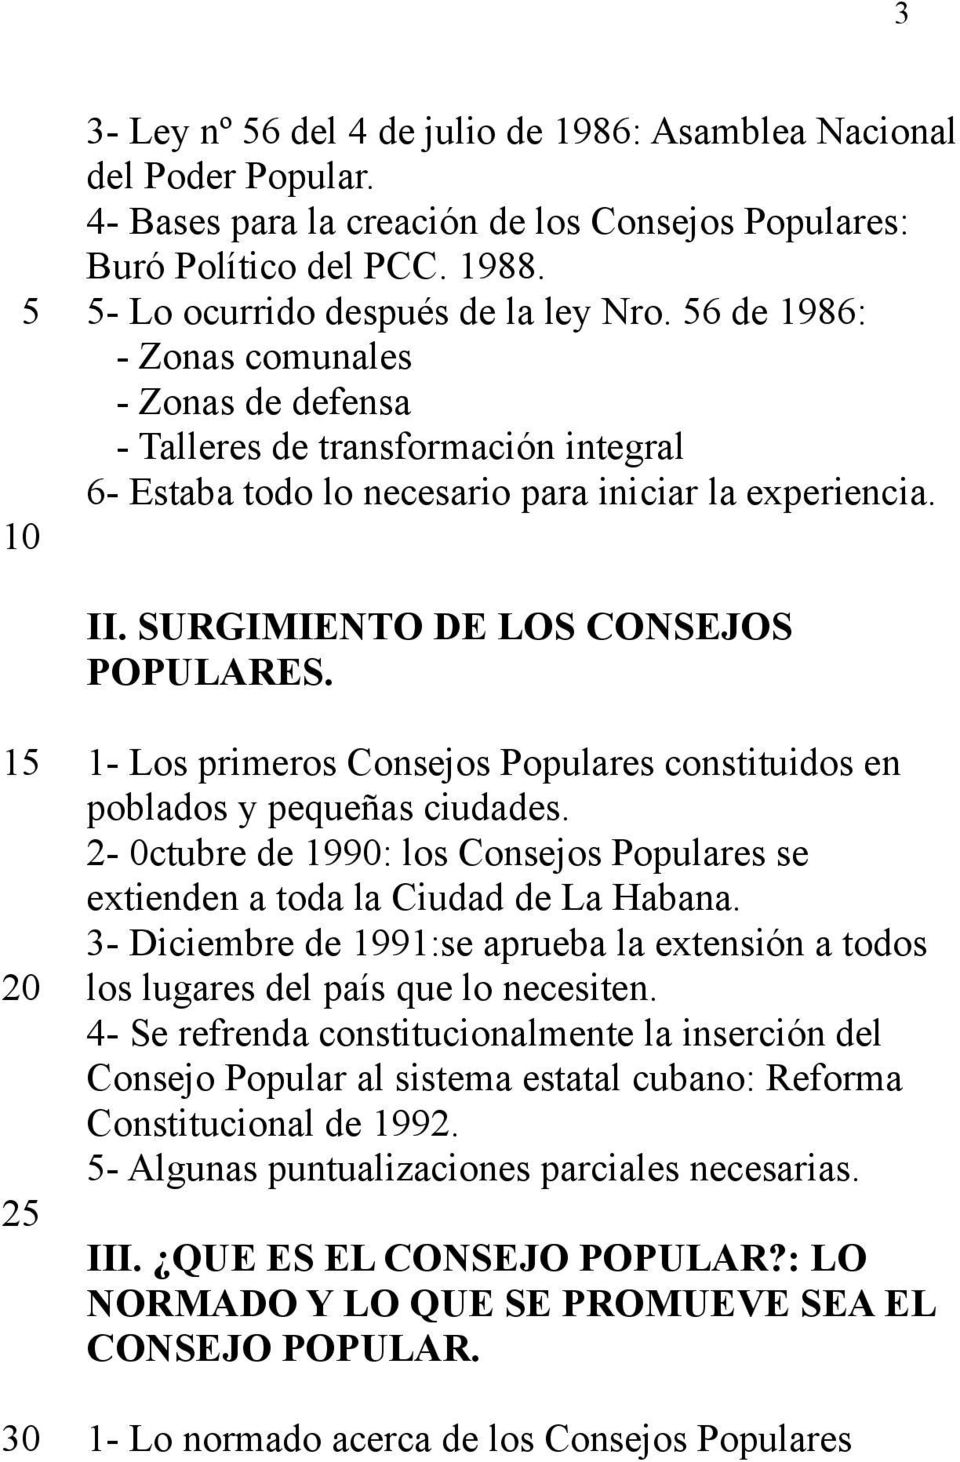 1- Los primeros Consejos Populares constituidos en poblados y pequeñas ciudades. 2-0ctubre de 1990: los Consejos Populares se extienden a toda la Ciudad de La Habana.